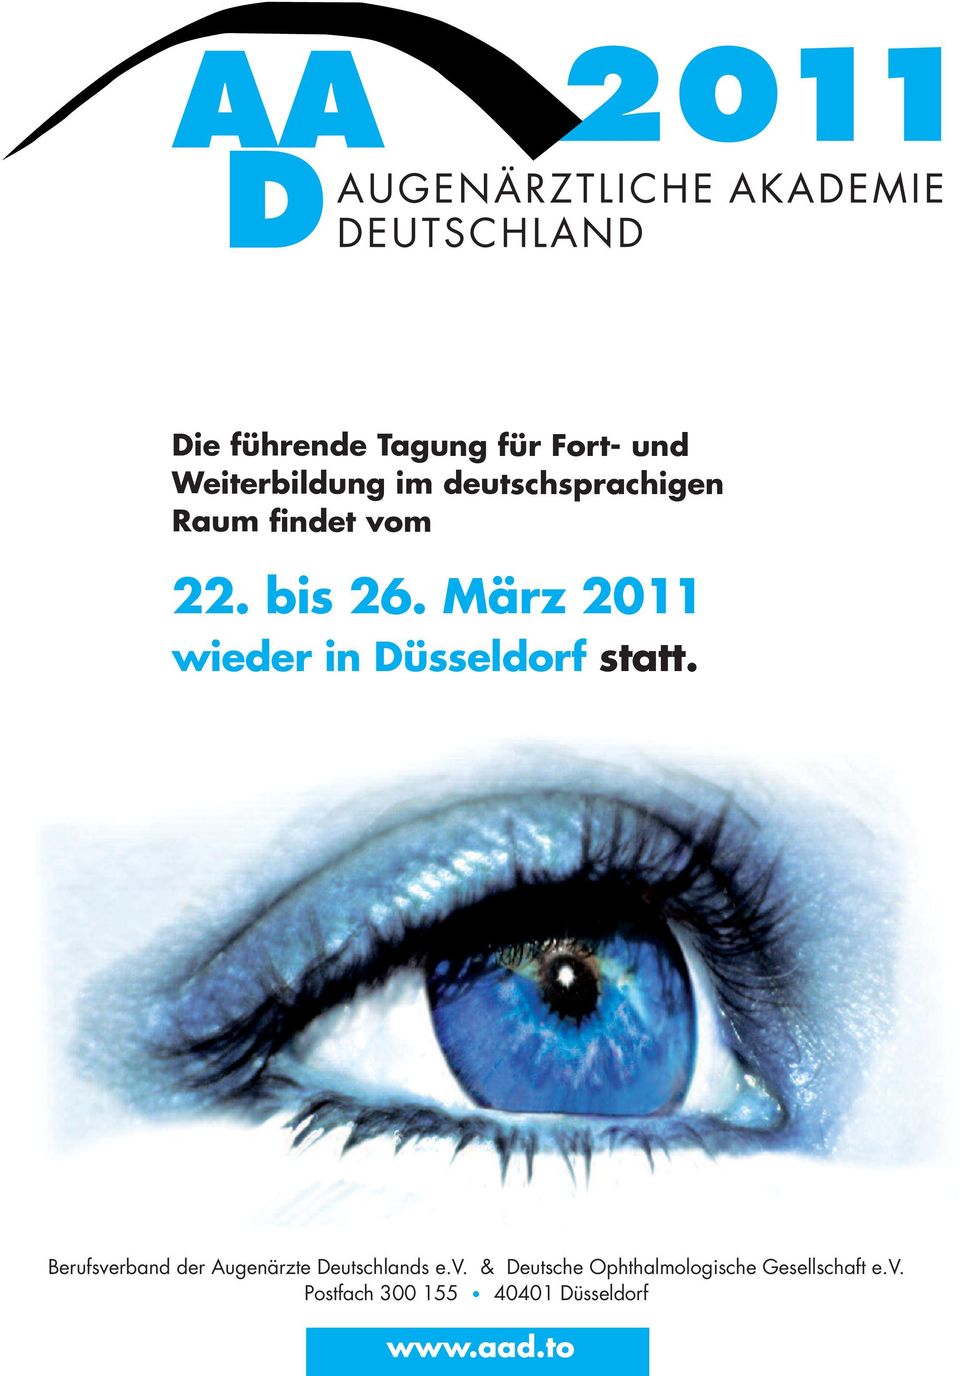 Berufsverband der Augenärzte Deutschlands e.v. & Deutsche Ophthalmologische Gesellschaft e.